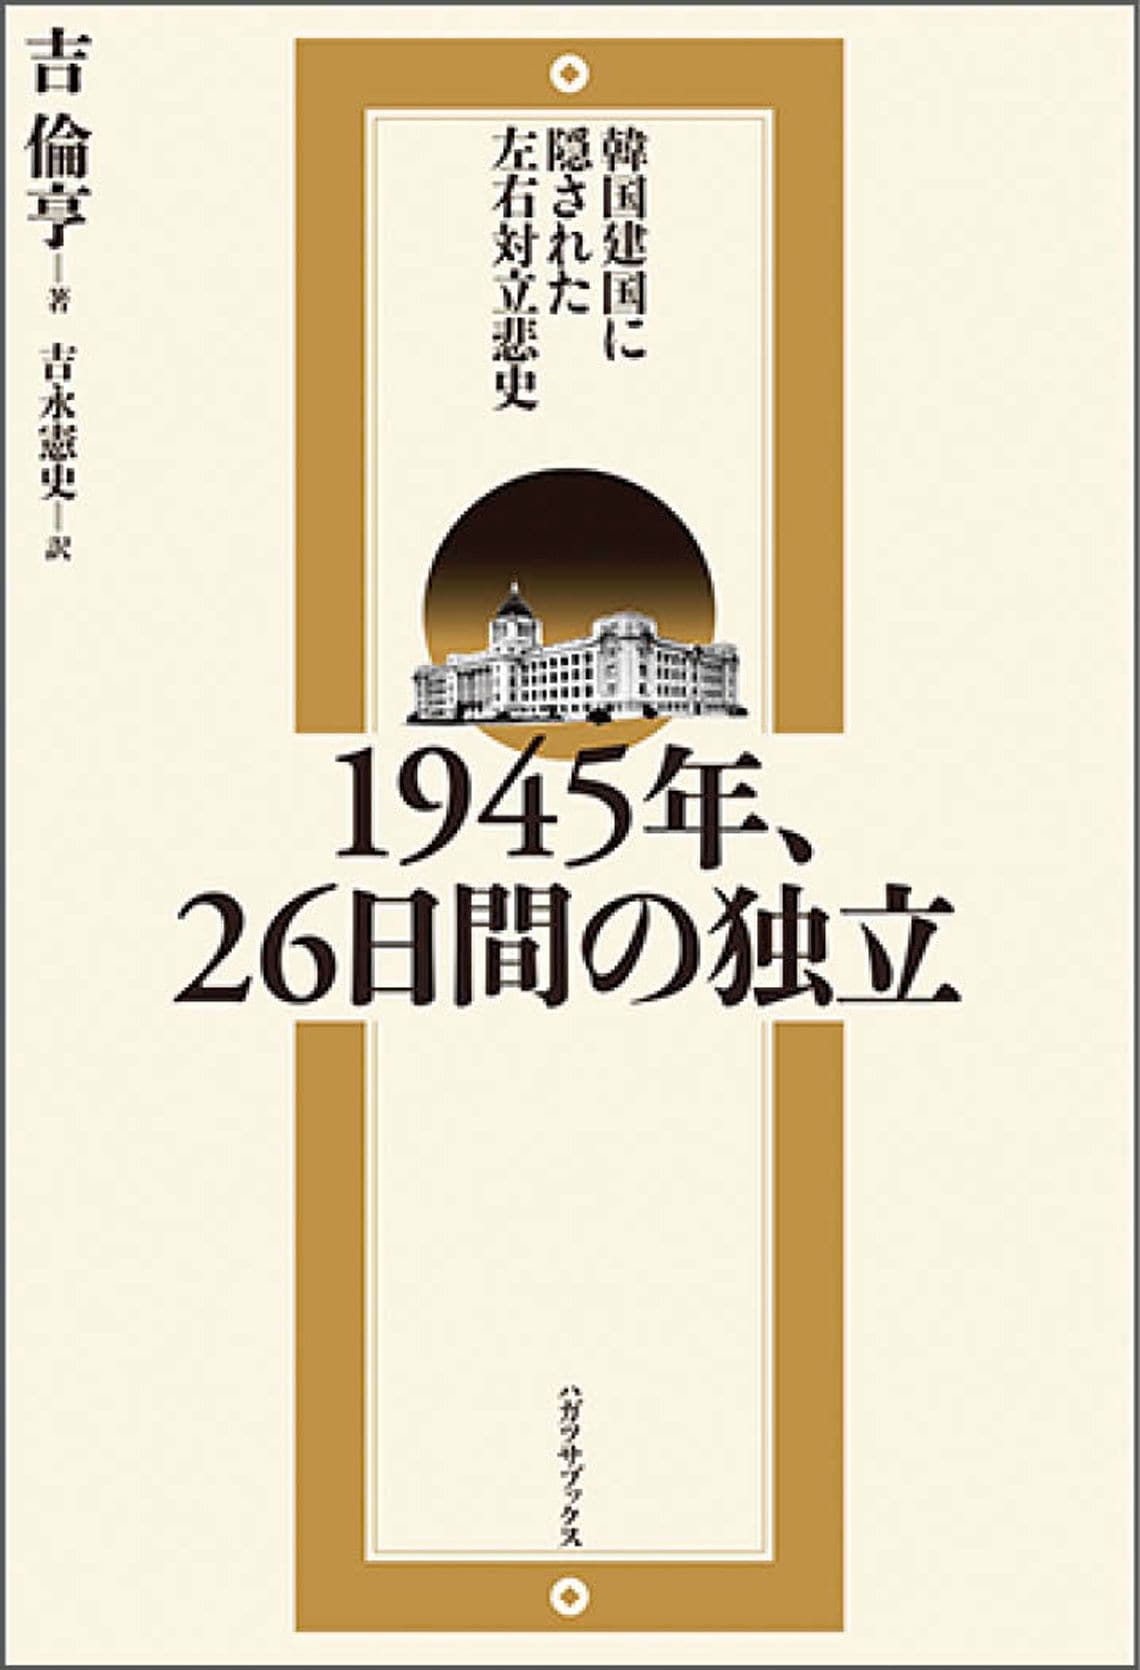 韓国建国に隠された左右対立悲史-1945年、26日間の独立